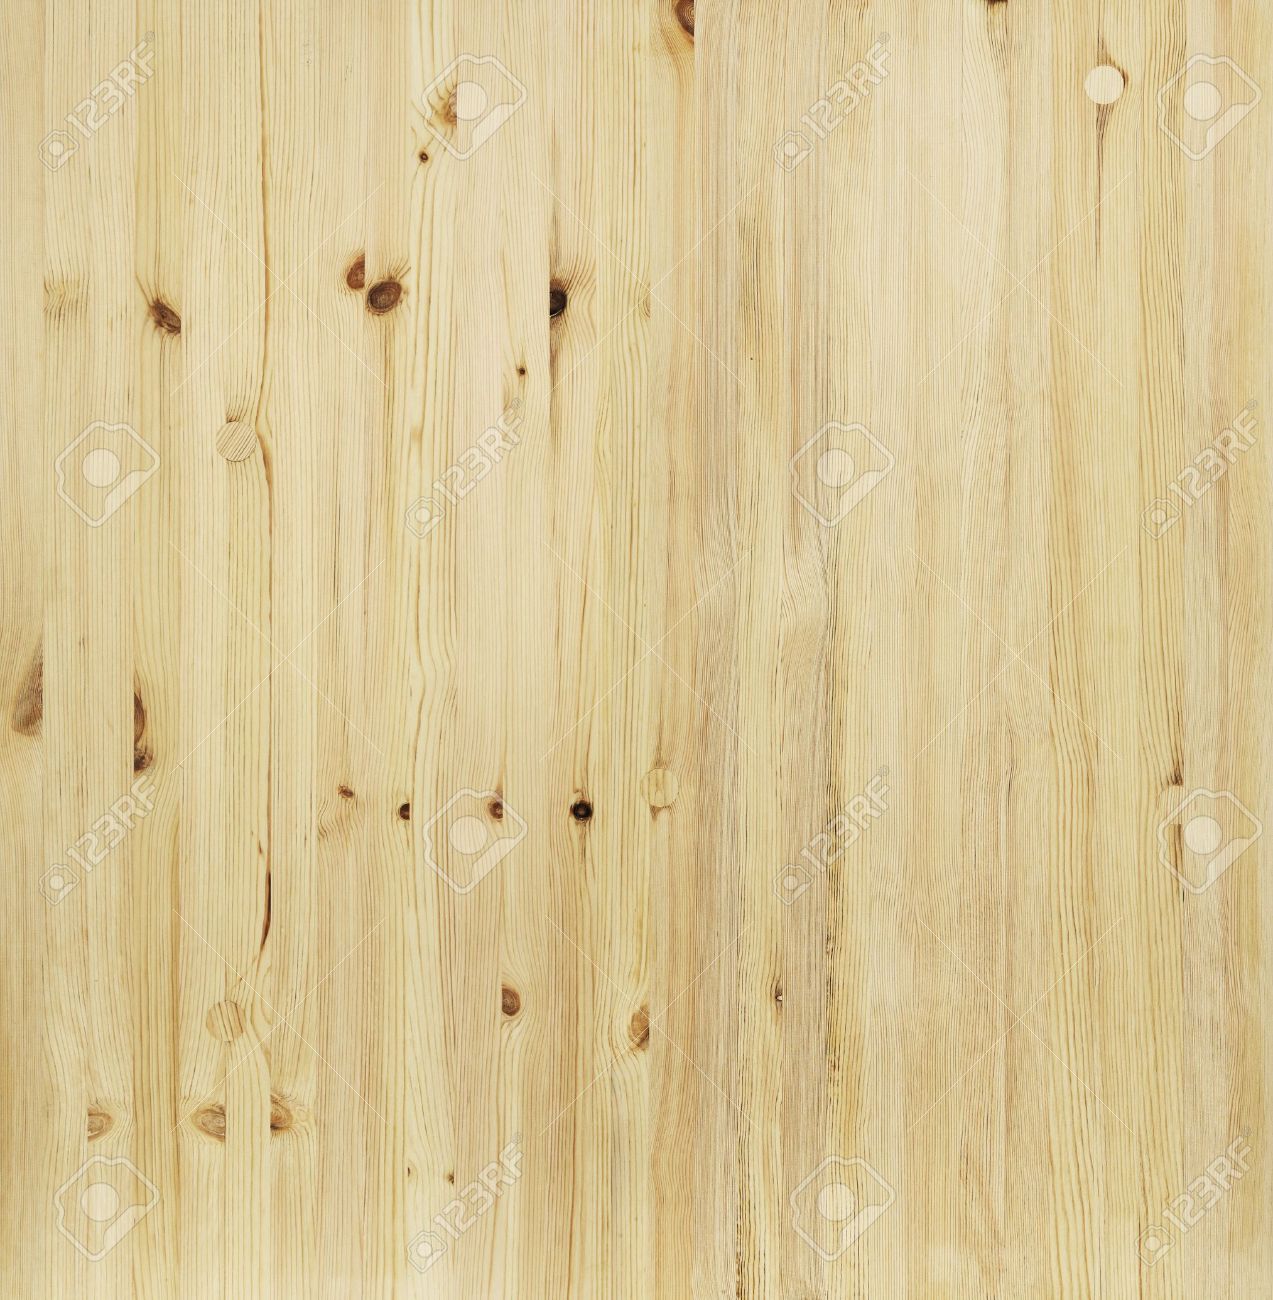 Pine Wood Floor manufacturer in Indore